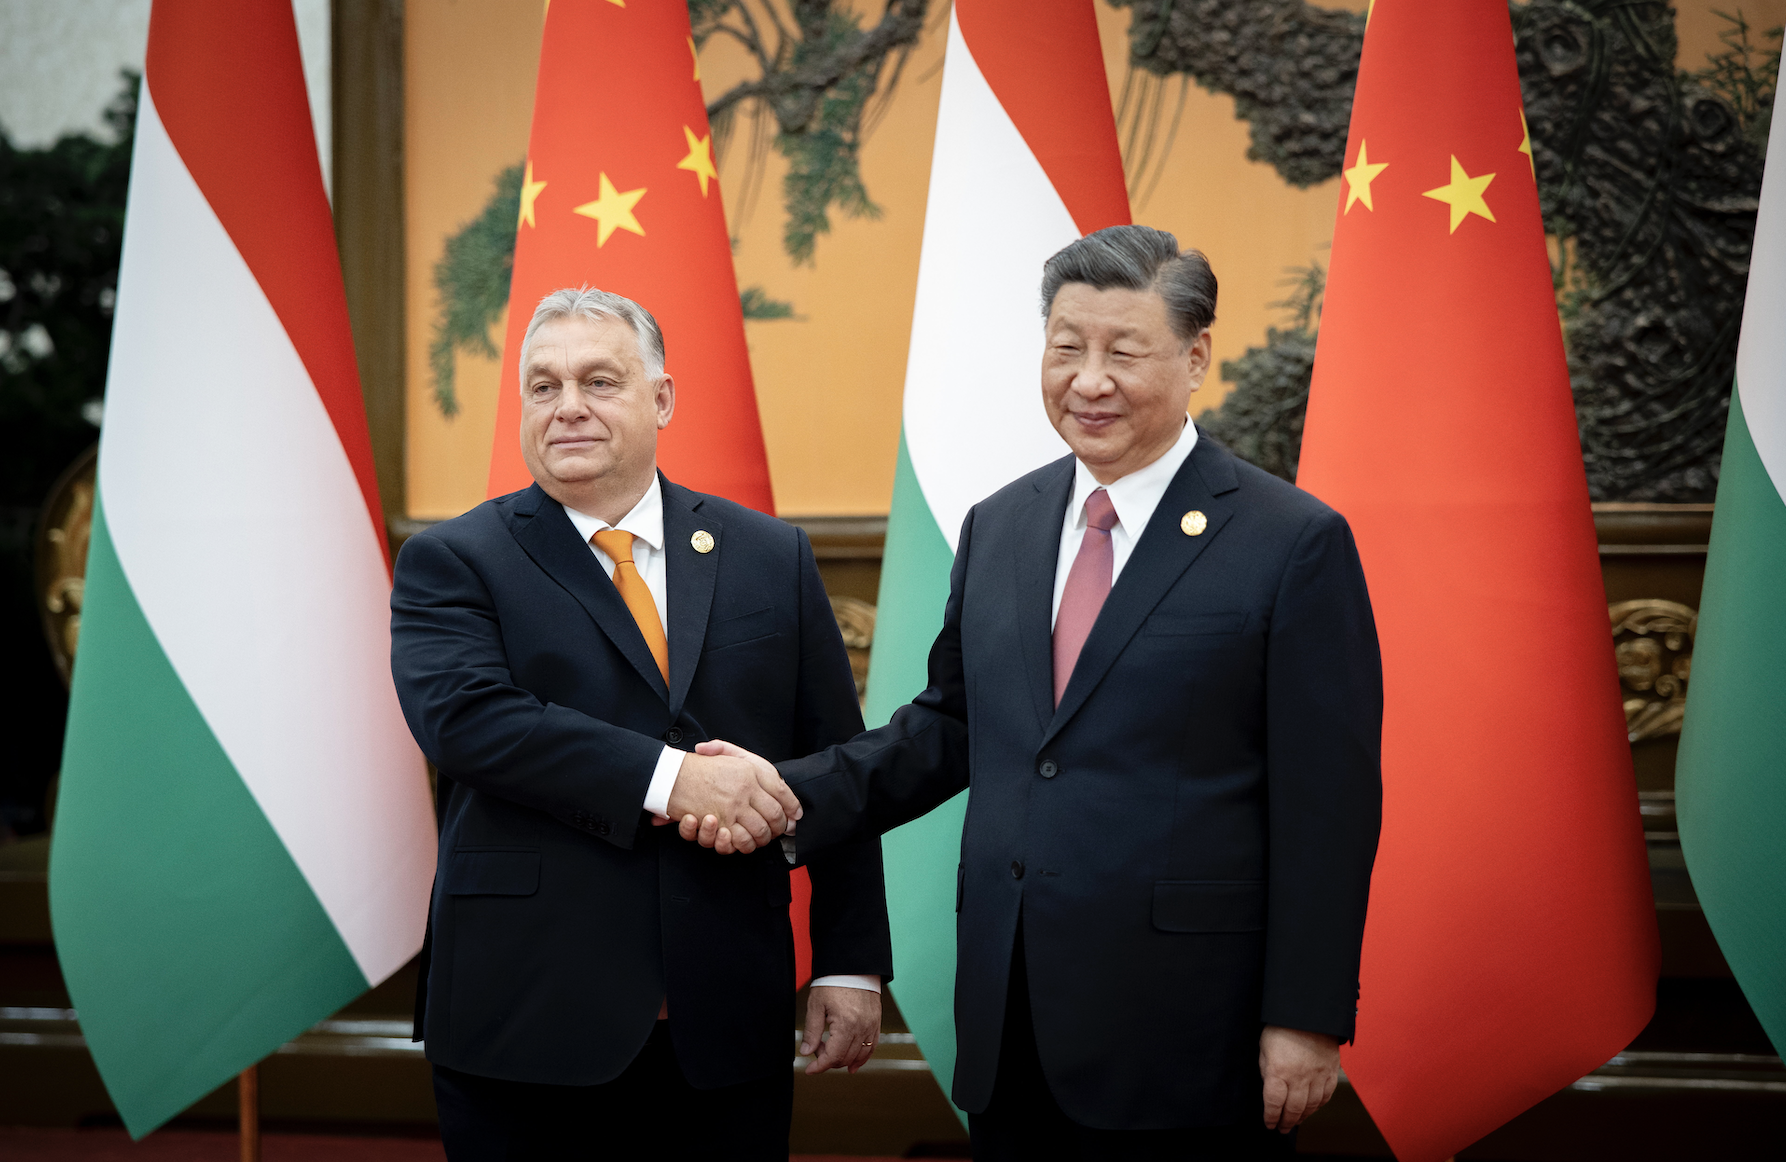 Orbán Meets With Xi in Beijing